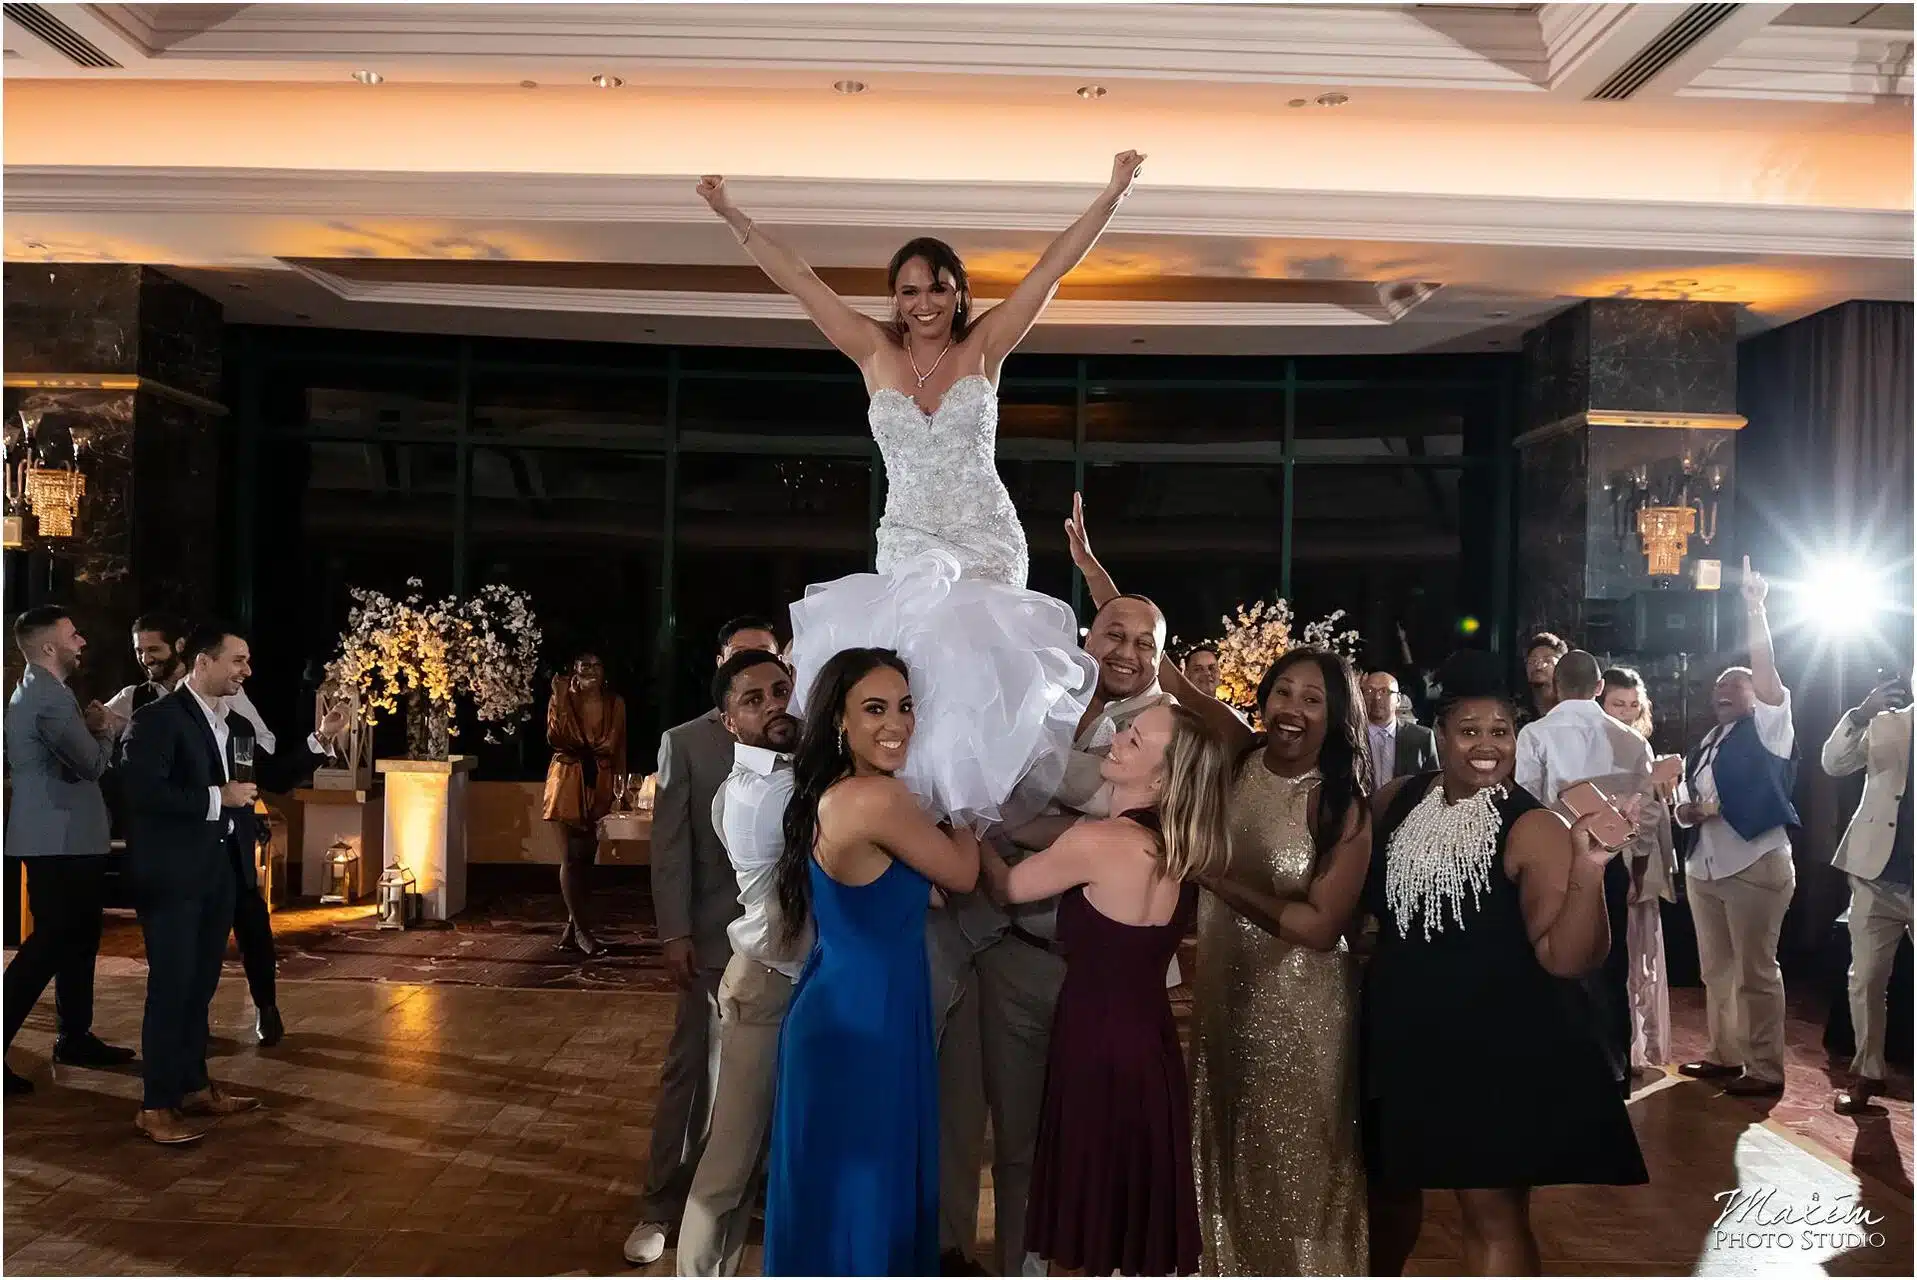 Condado Vanderbilt Hotel wedding reception, Puerto Rico wedding photography, Destination Wedding Photography, Puerto Rico Wedding photography